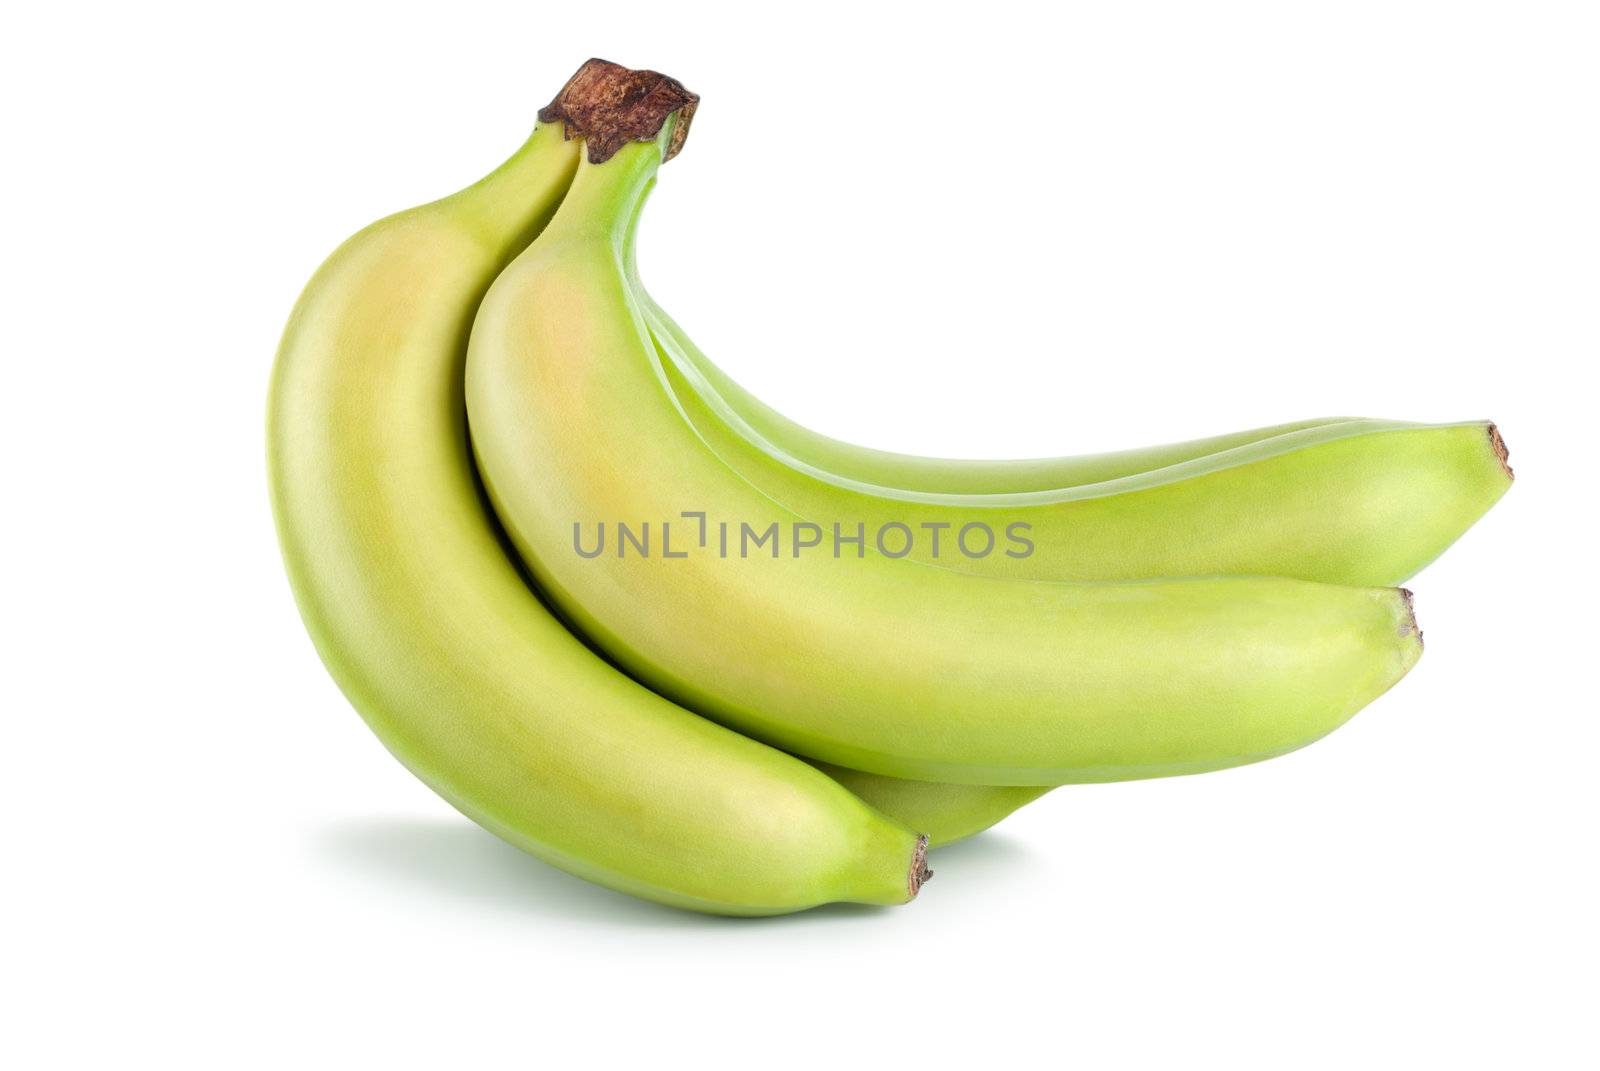 Green bananas by Givaga